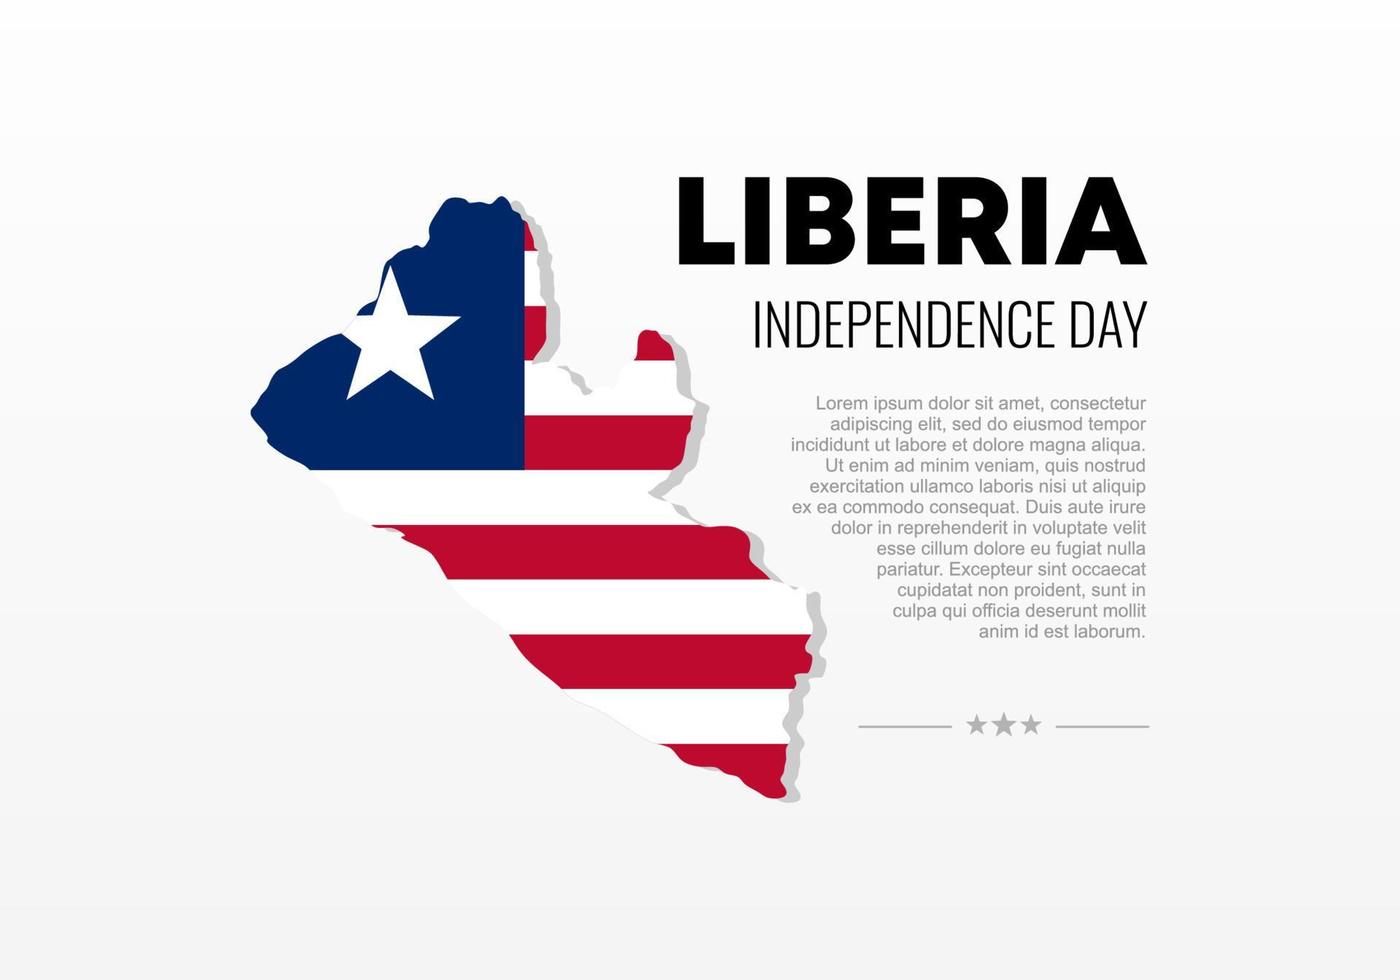 día de la independencia de liberia para la celebración nacional el 26 de julio. vector